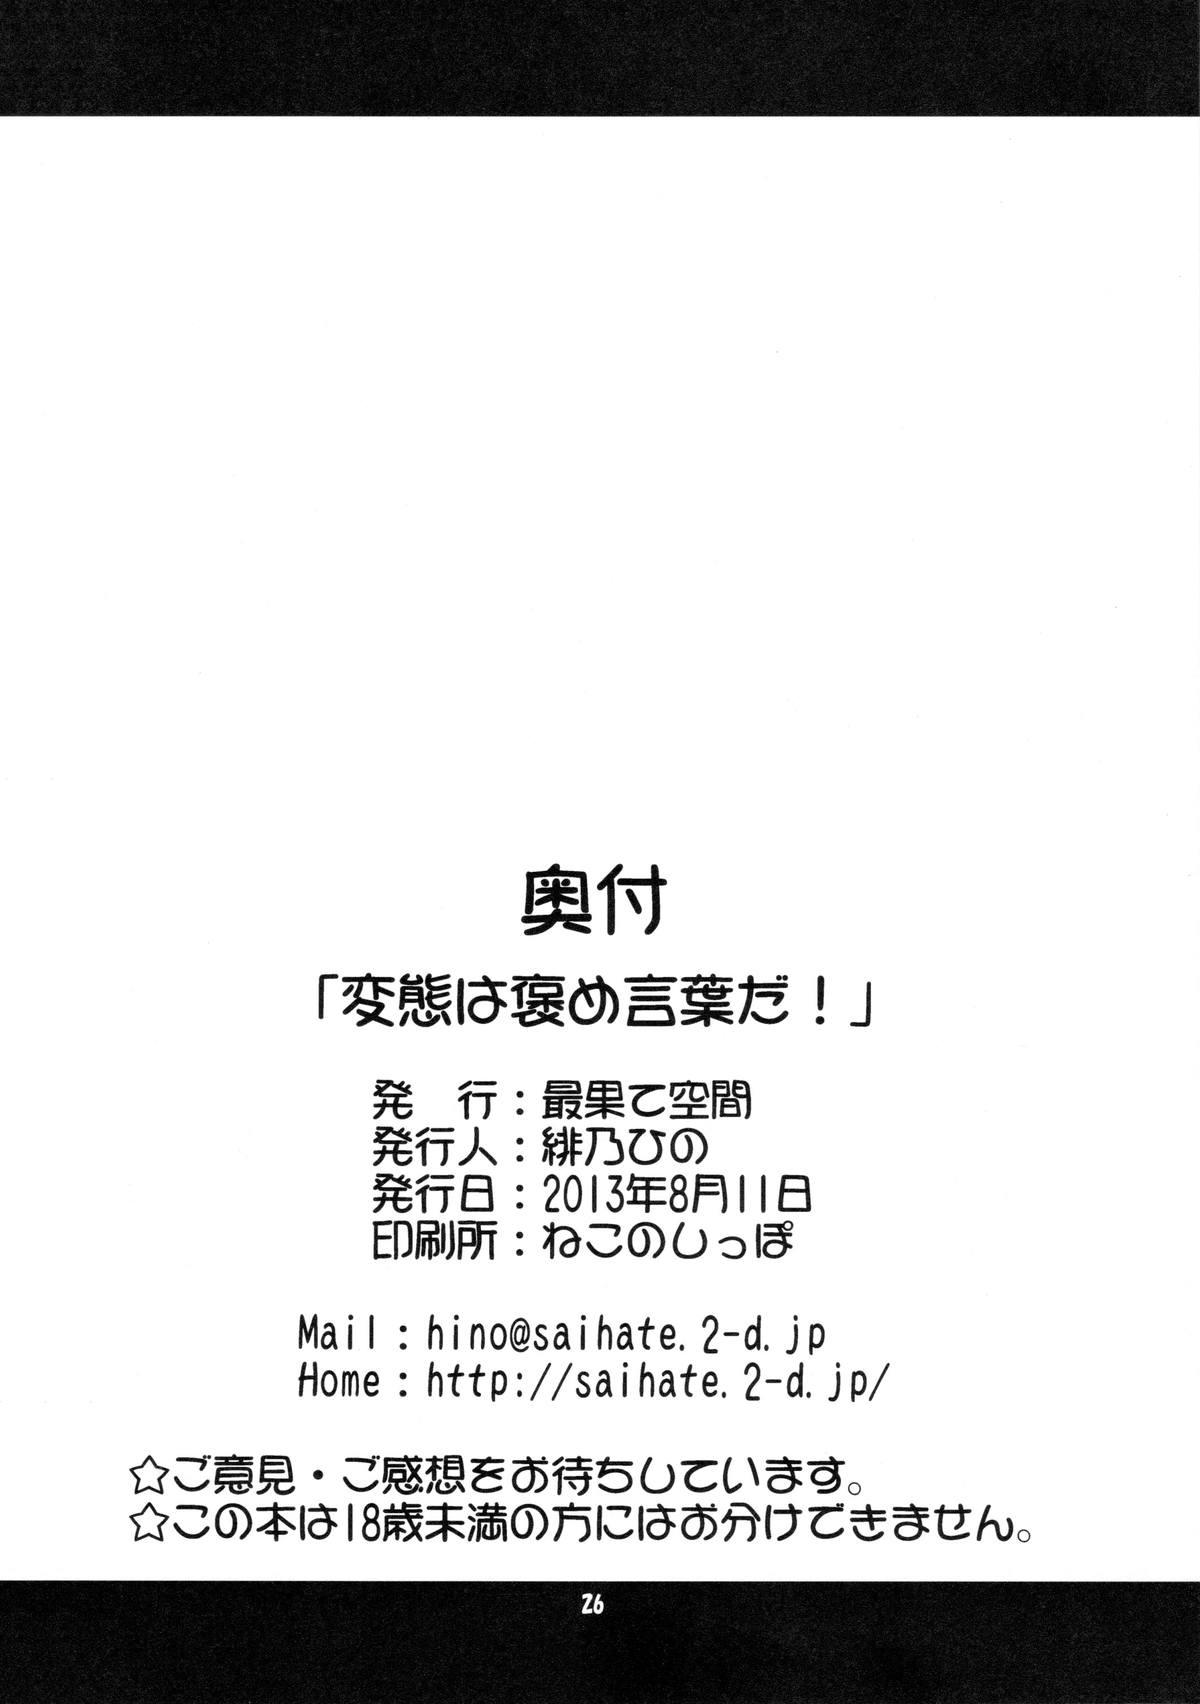 Bdsm HENTAI wa Home Kotoba da! - "HENTAI" is a eulogy! - Hentai ouji to warawanai neko Boots - Page 25